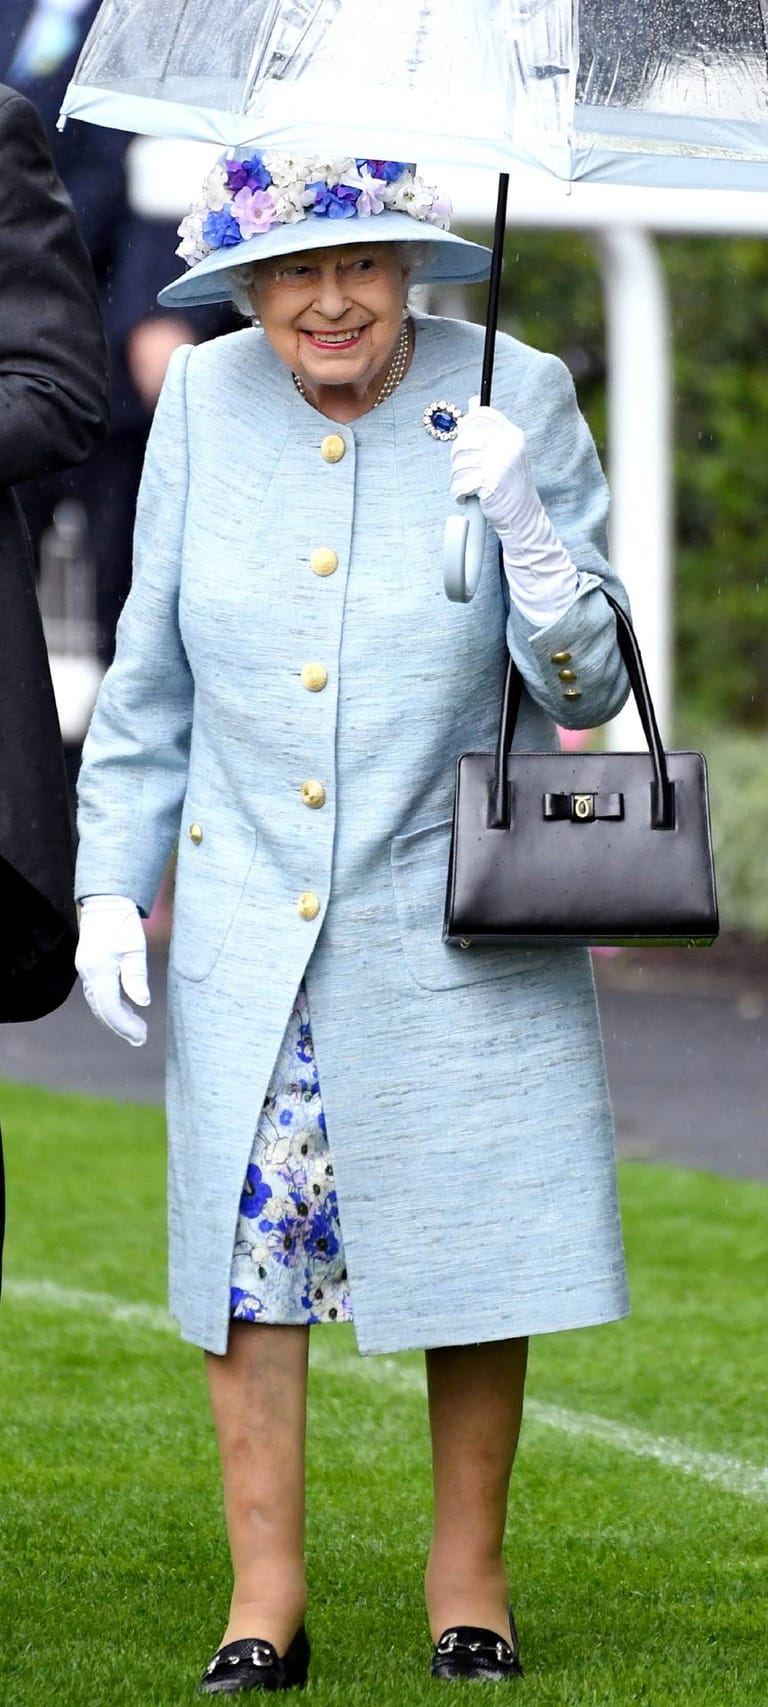 Auch am zweiten Tag kam die Queen in einem blauen Outfit.